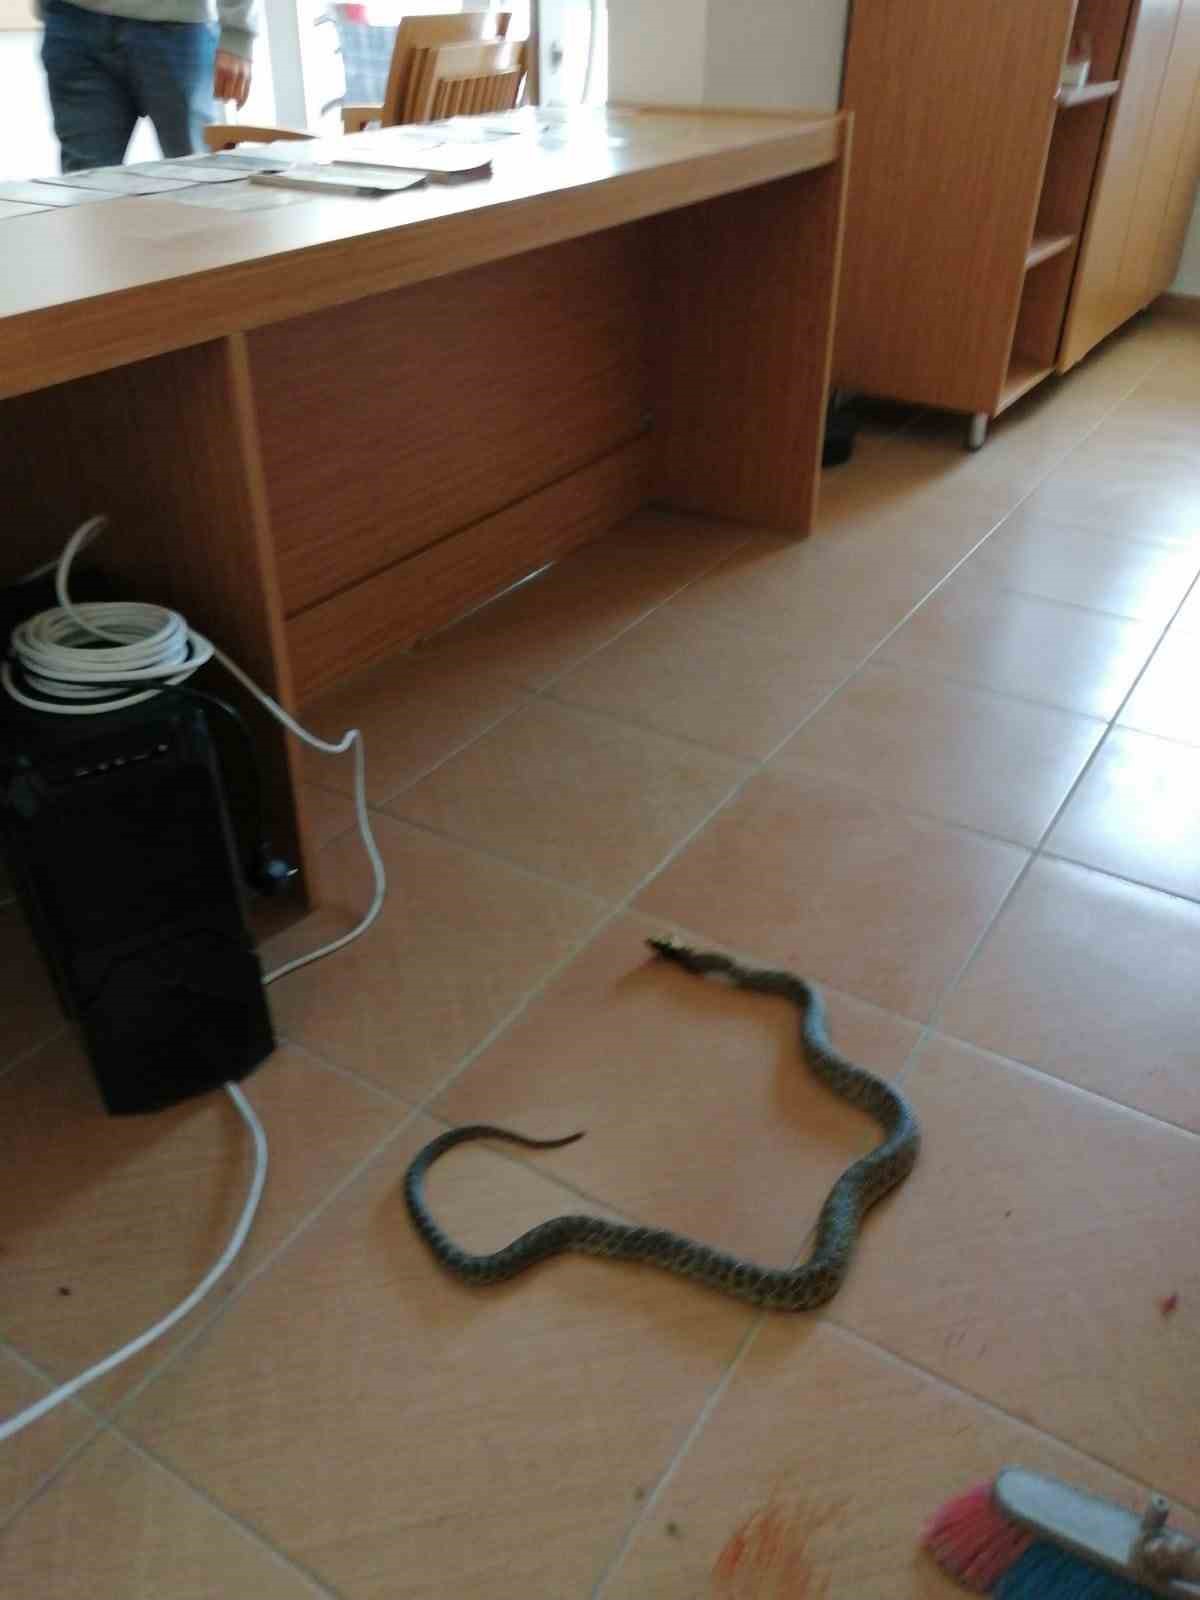 Bilecik’te sağlık ocağına giren yılan panik yaşattı
